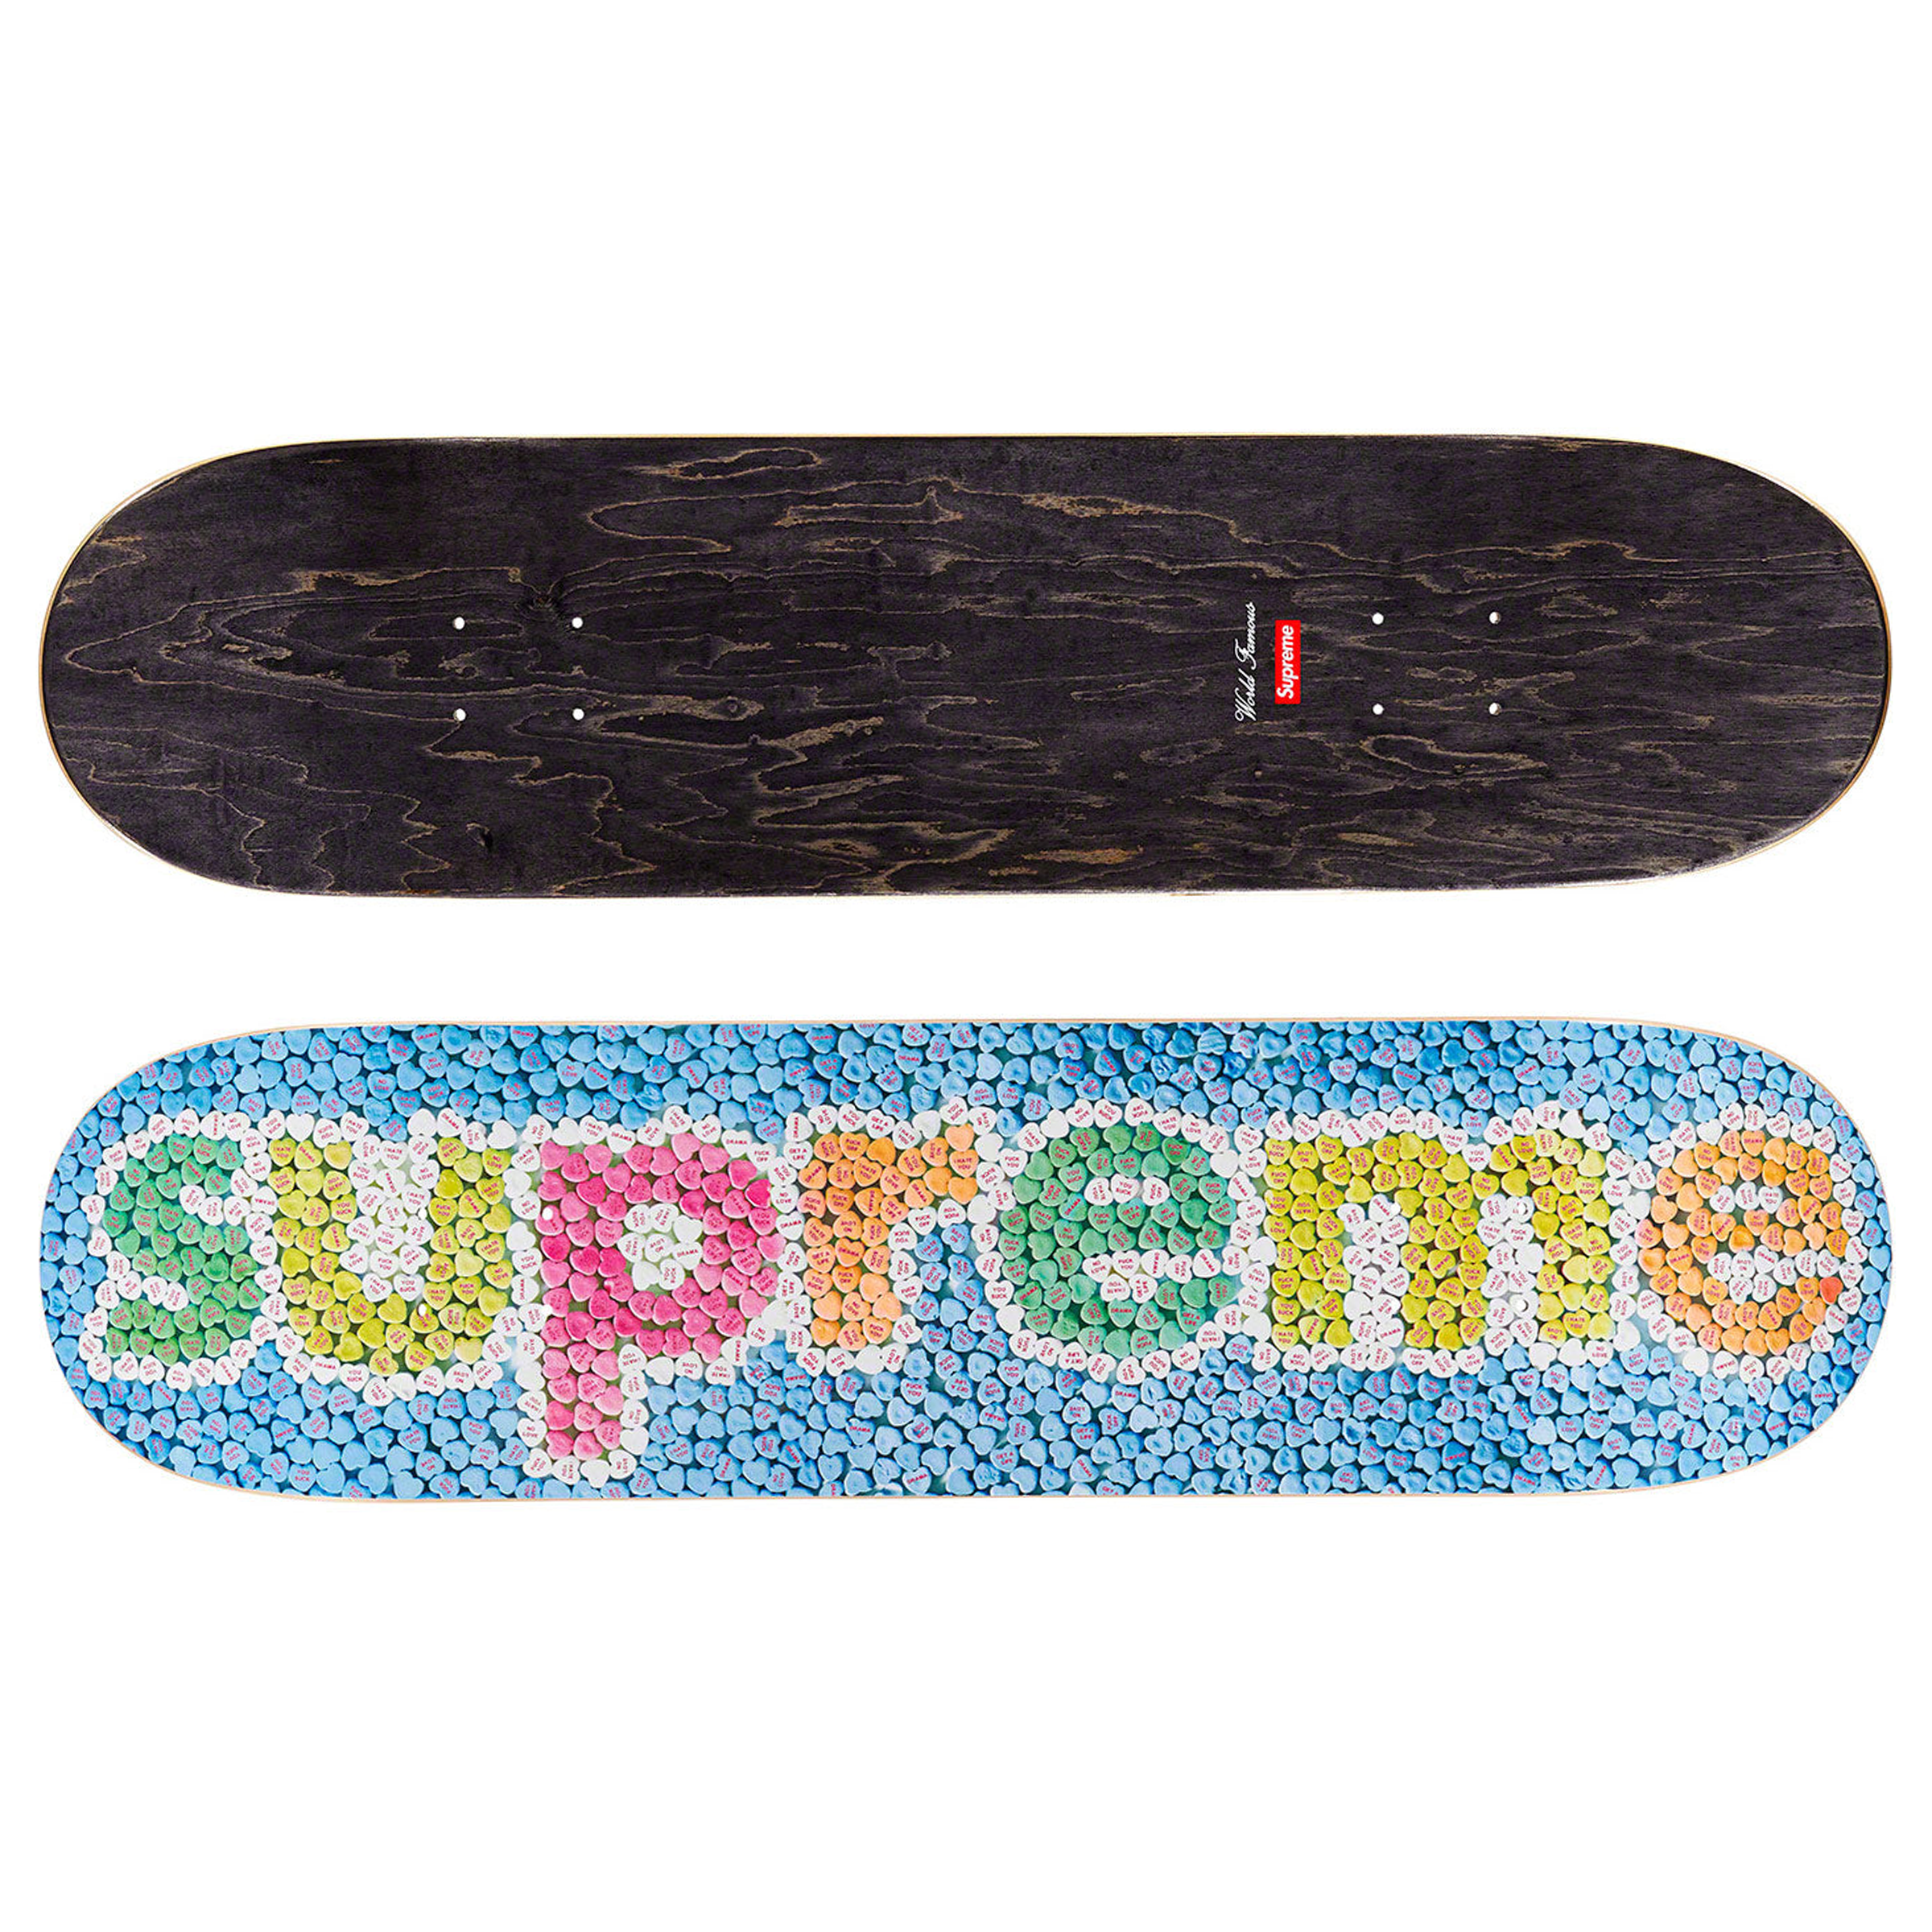 Supreme "Candy Hearts" Skateboard